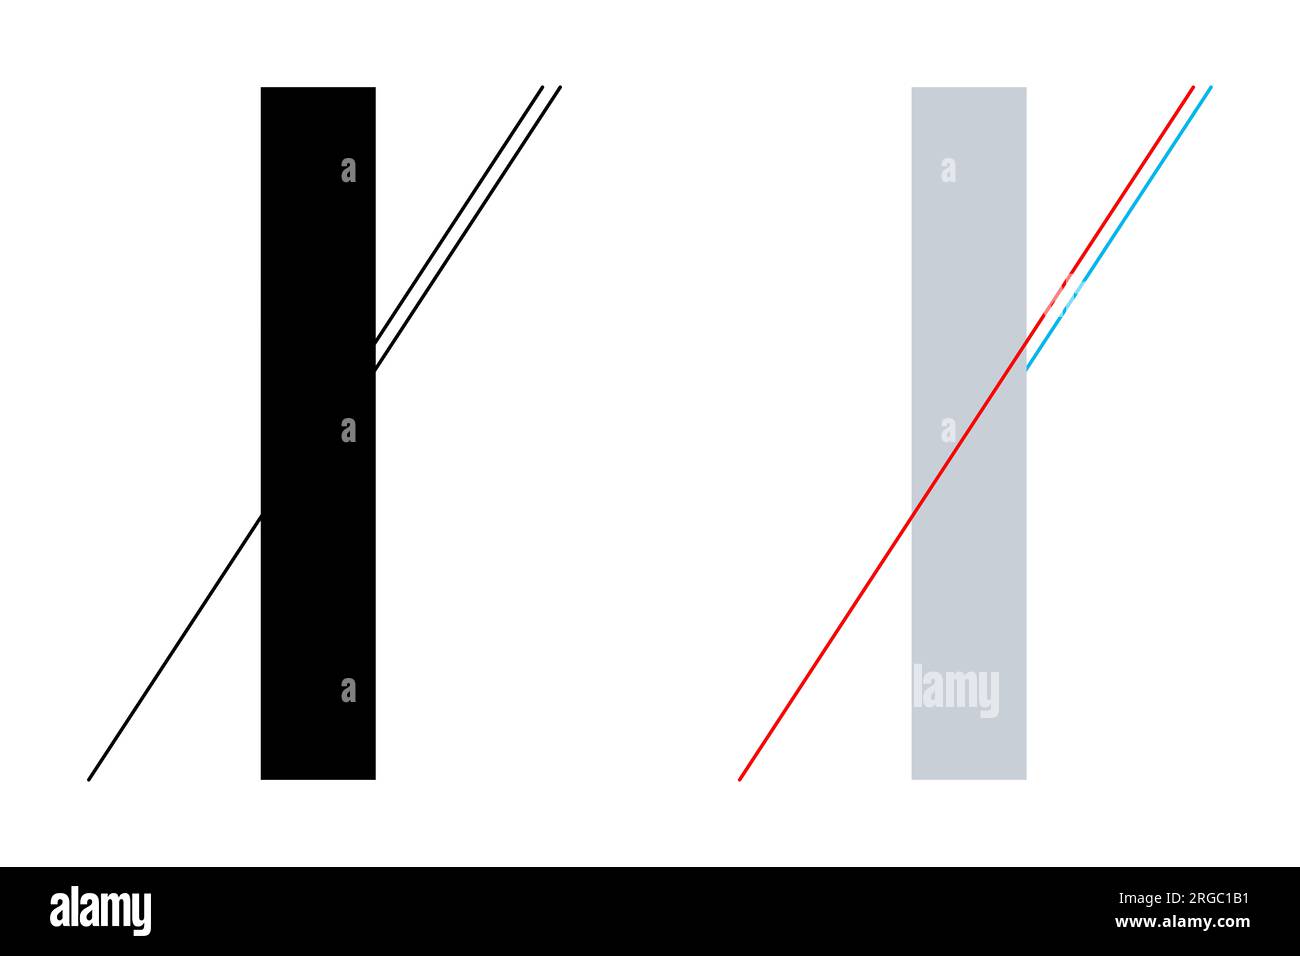 Illusion d'optique géométrique de Poggendorff. La suite de la ligne en bas à gauche est confondue avec la ligne plus courte sur le côté droit ci-dessous. Banque D'Images